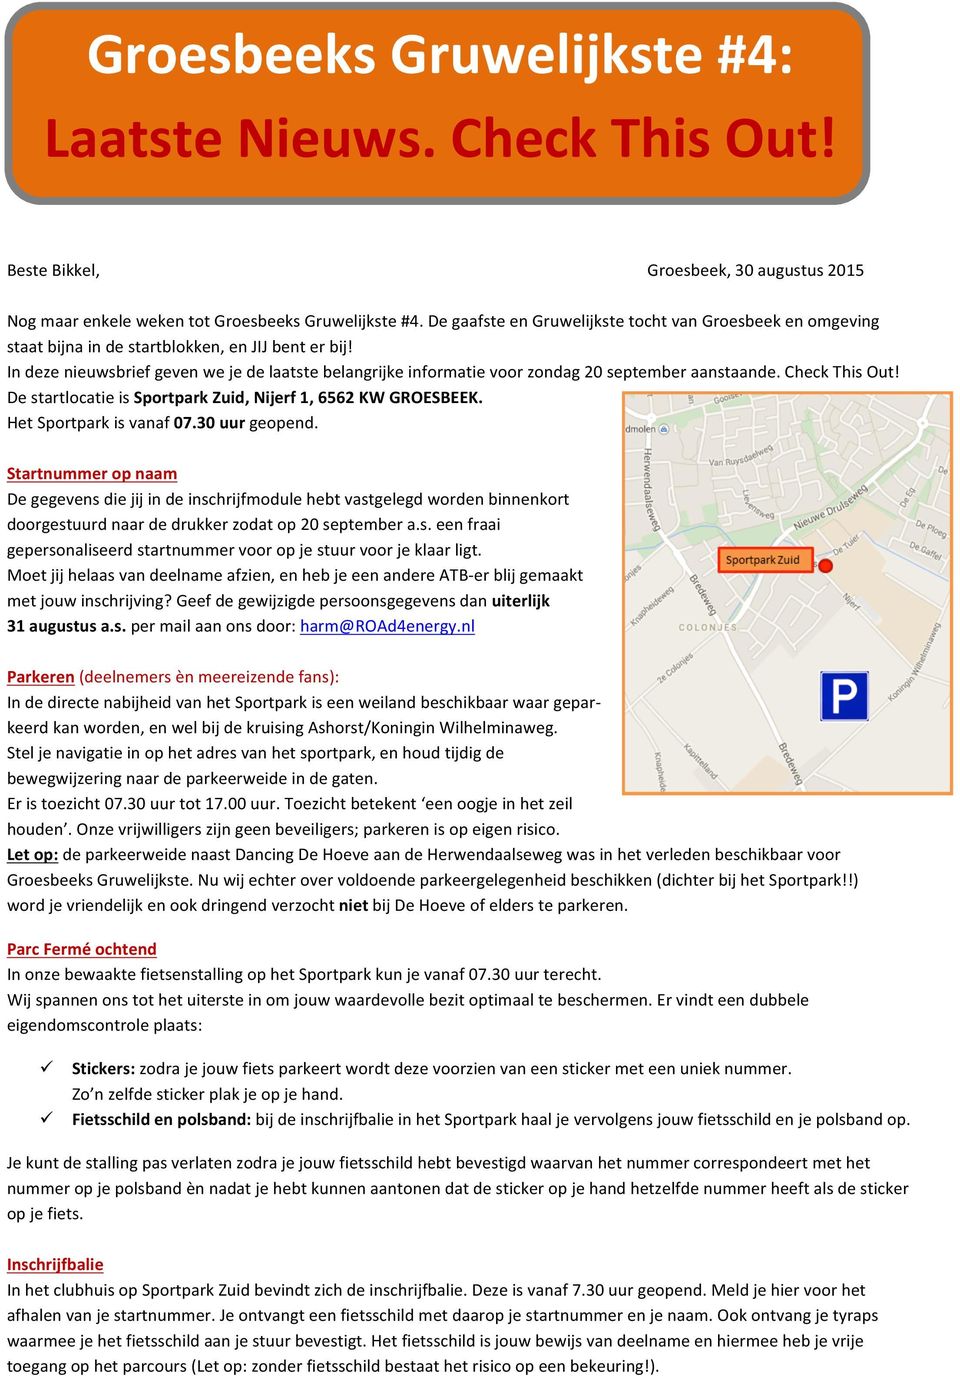 In deze nieuwsbrief geven we je de laatste belangrijke informatie voor zondag 20 september aanstaande. Check This Out! De startlocatie is Sportpark Zuid, Nijerf 1, 6562 KW GROESBEEK.